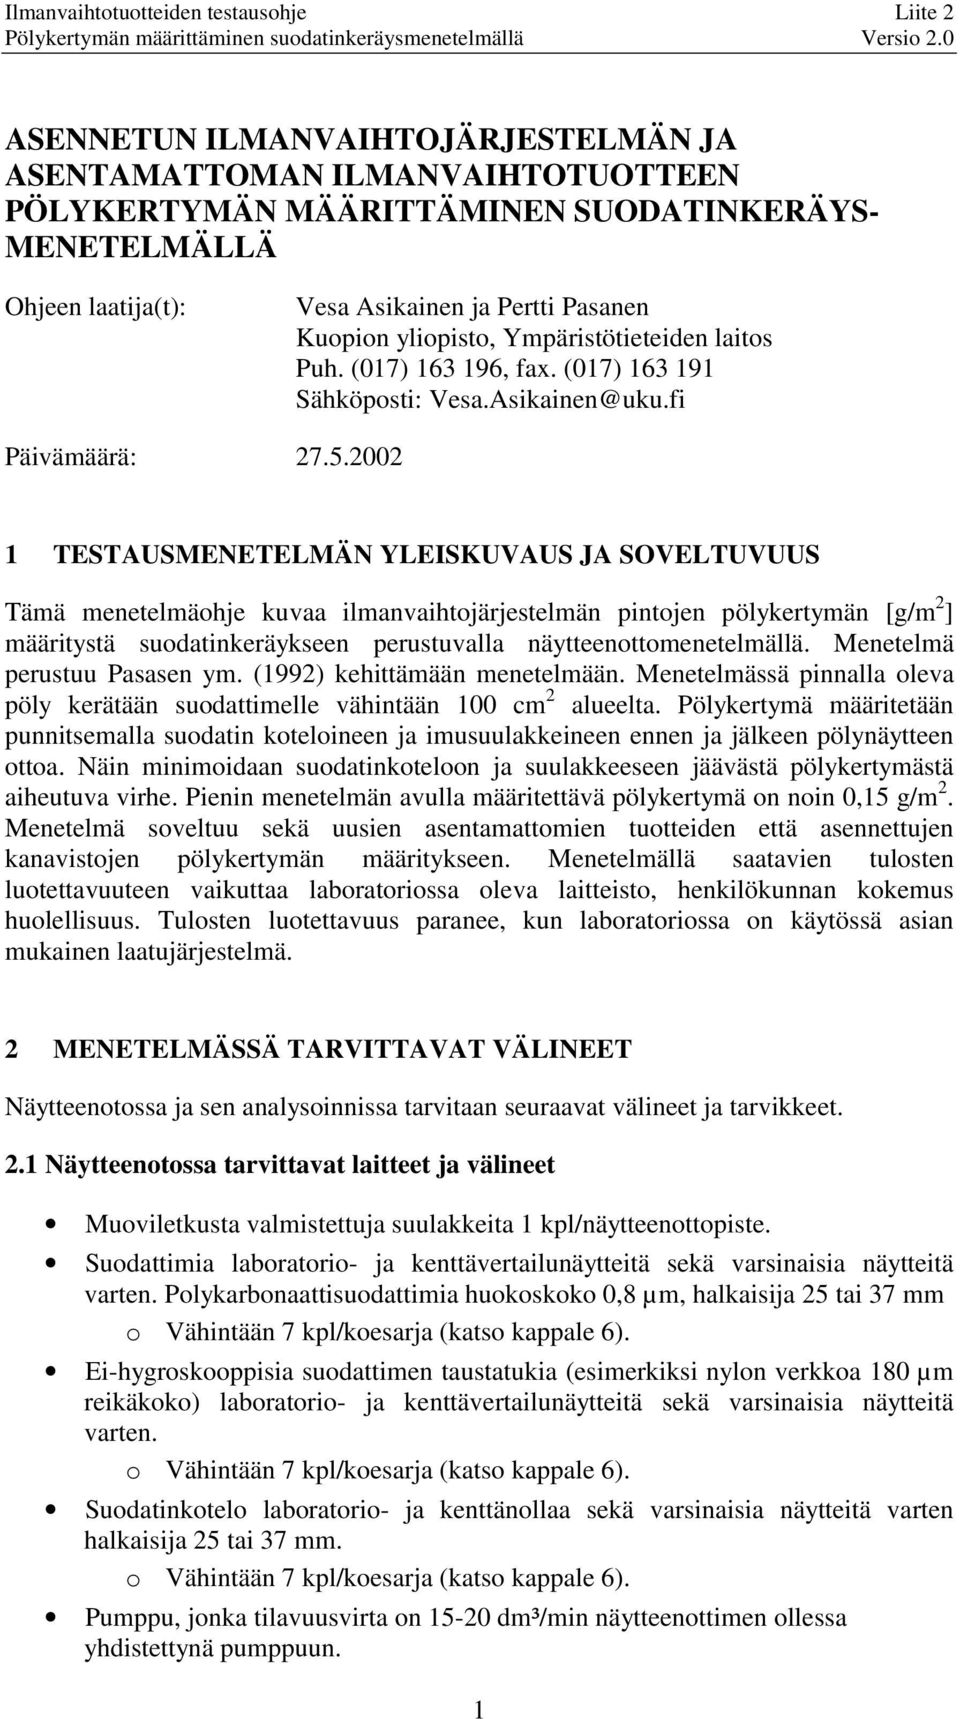 yliopisto, Ympäristötieteiden laitos Puh. (017) 163 196, fax. (017) 163 191 Sähköposti: Vesa.Asikainen@uku.fi Päivämäärä: 27.5.